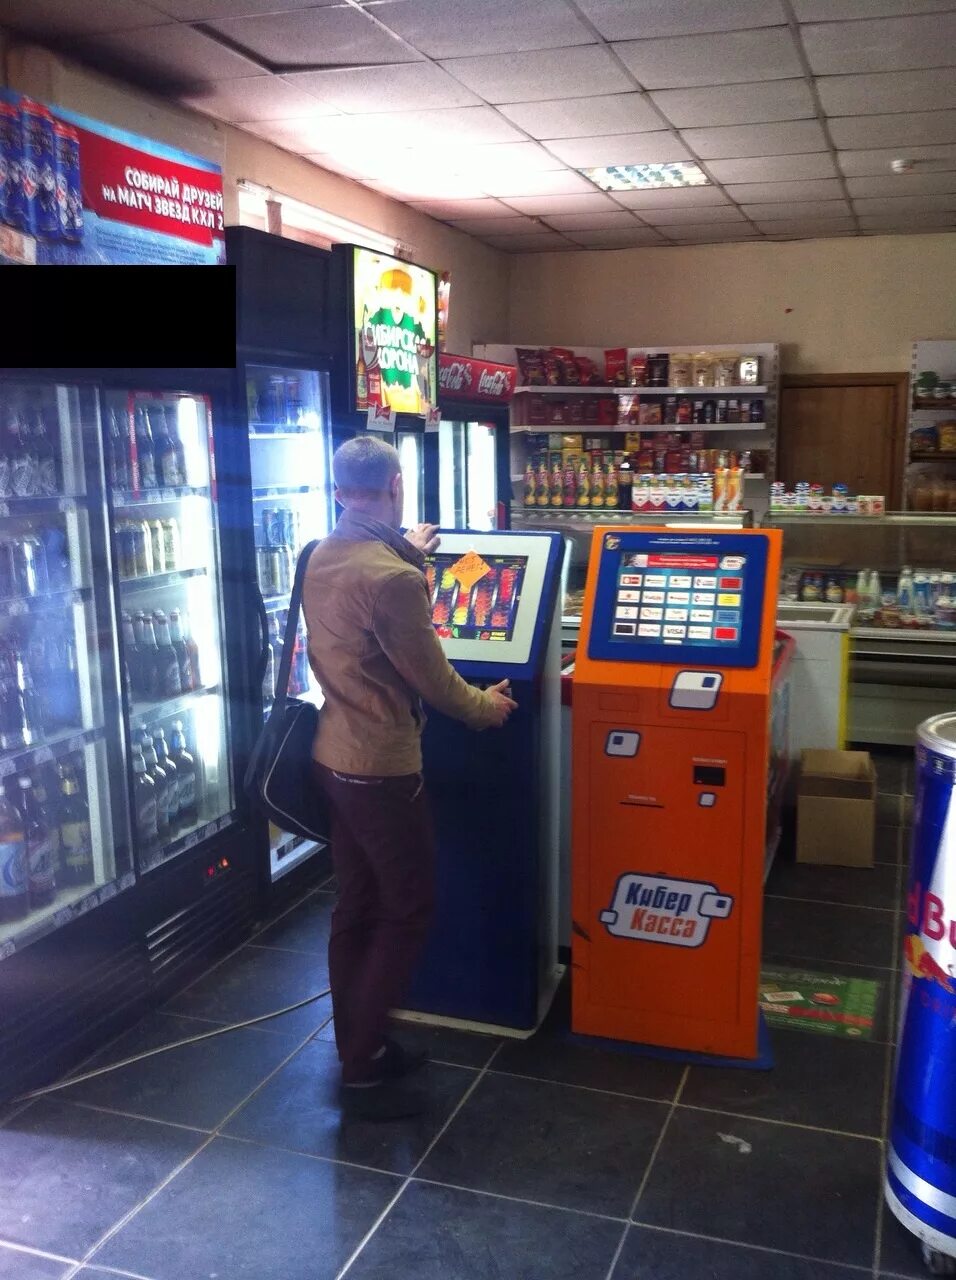 Игровые автоматы в магазинах. Игровые аппараты в магазинах. Магазин автомата. Автомат казино в магазине.